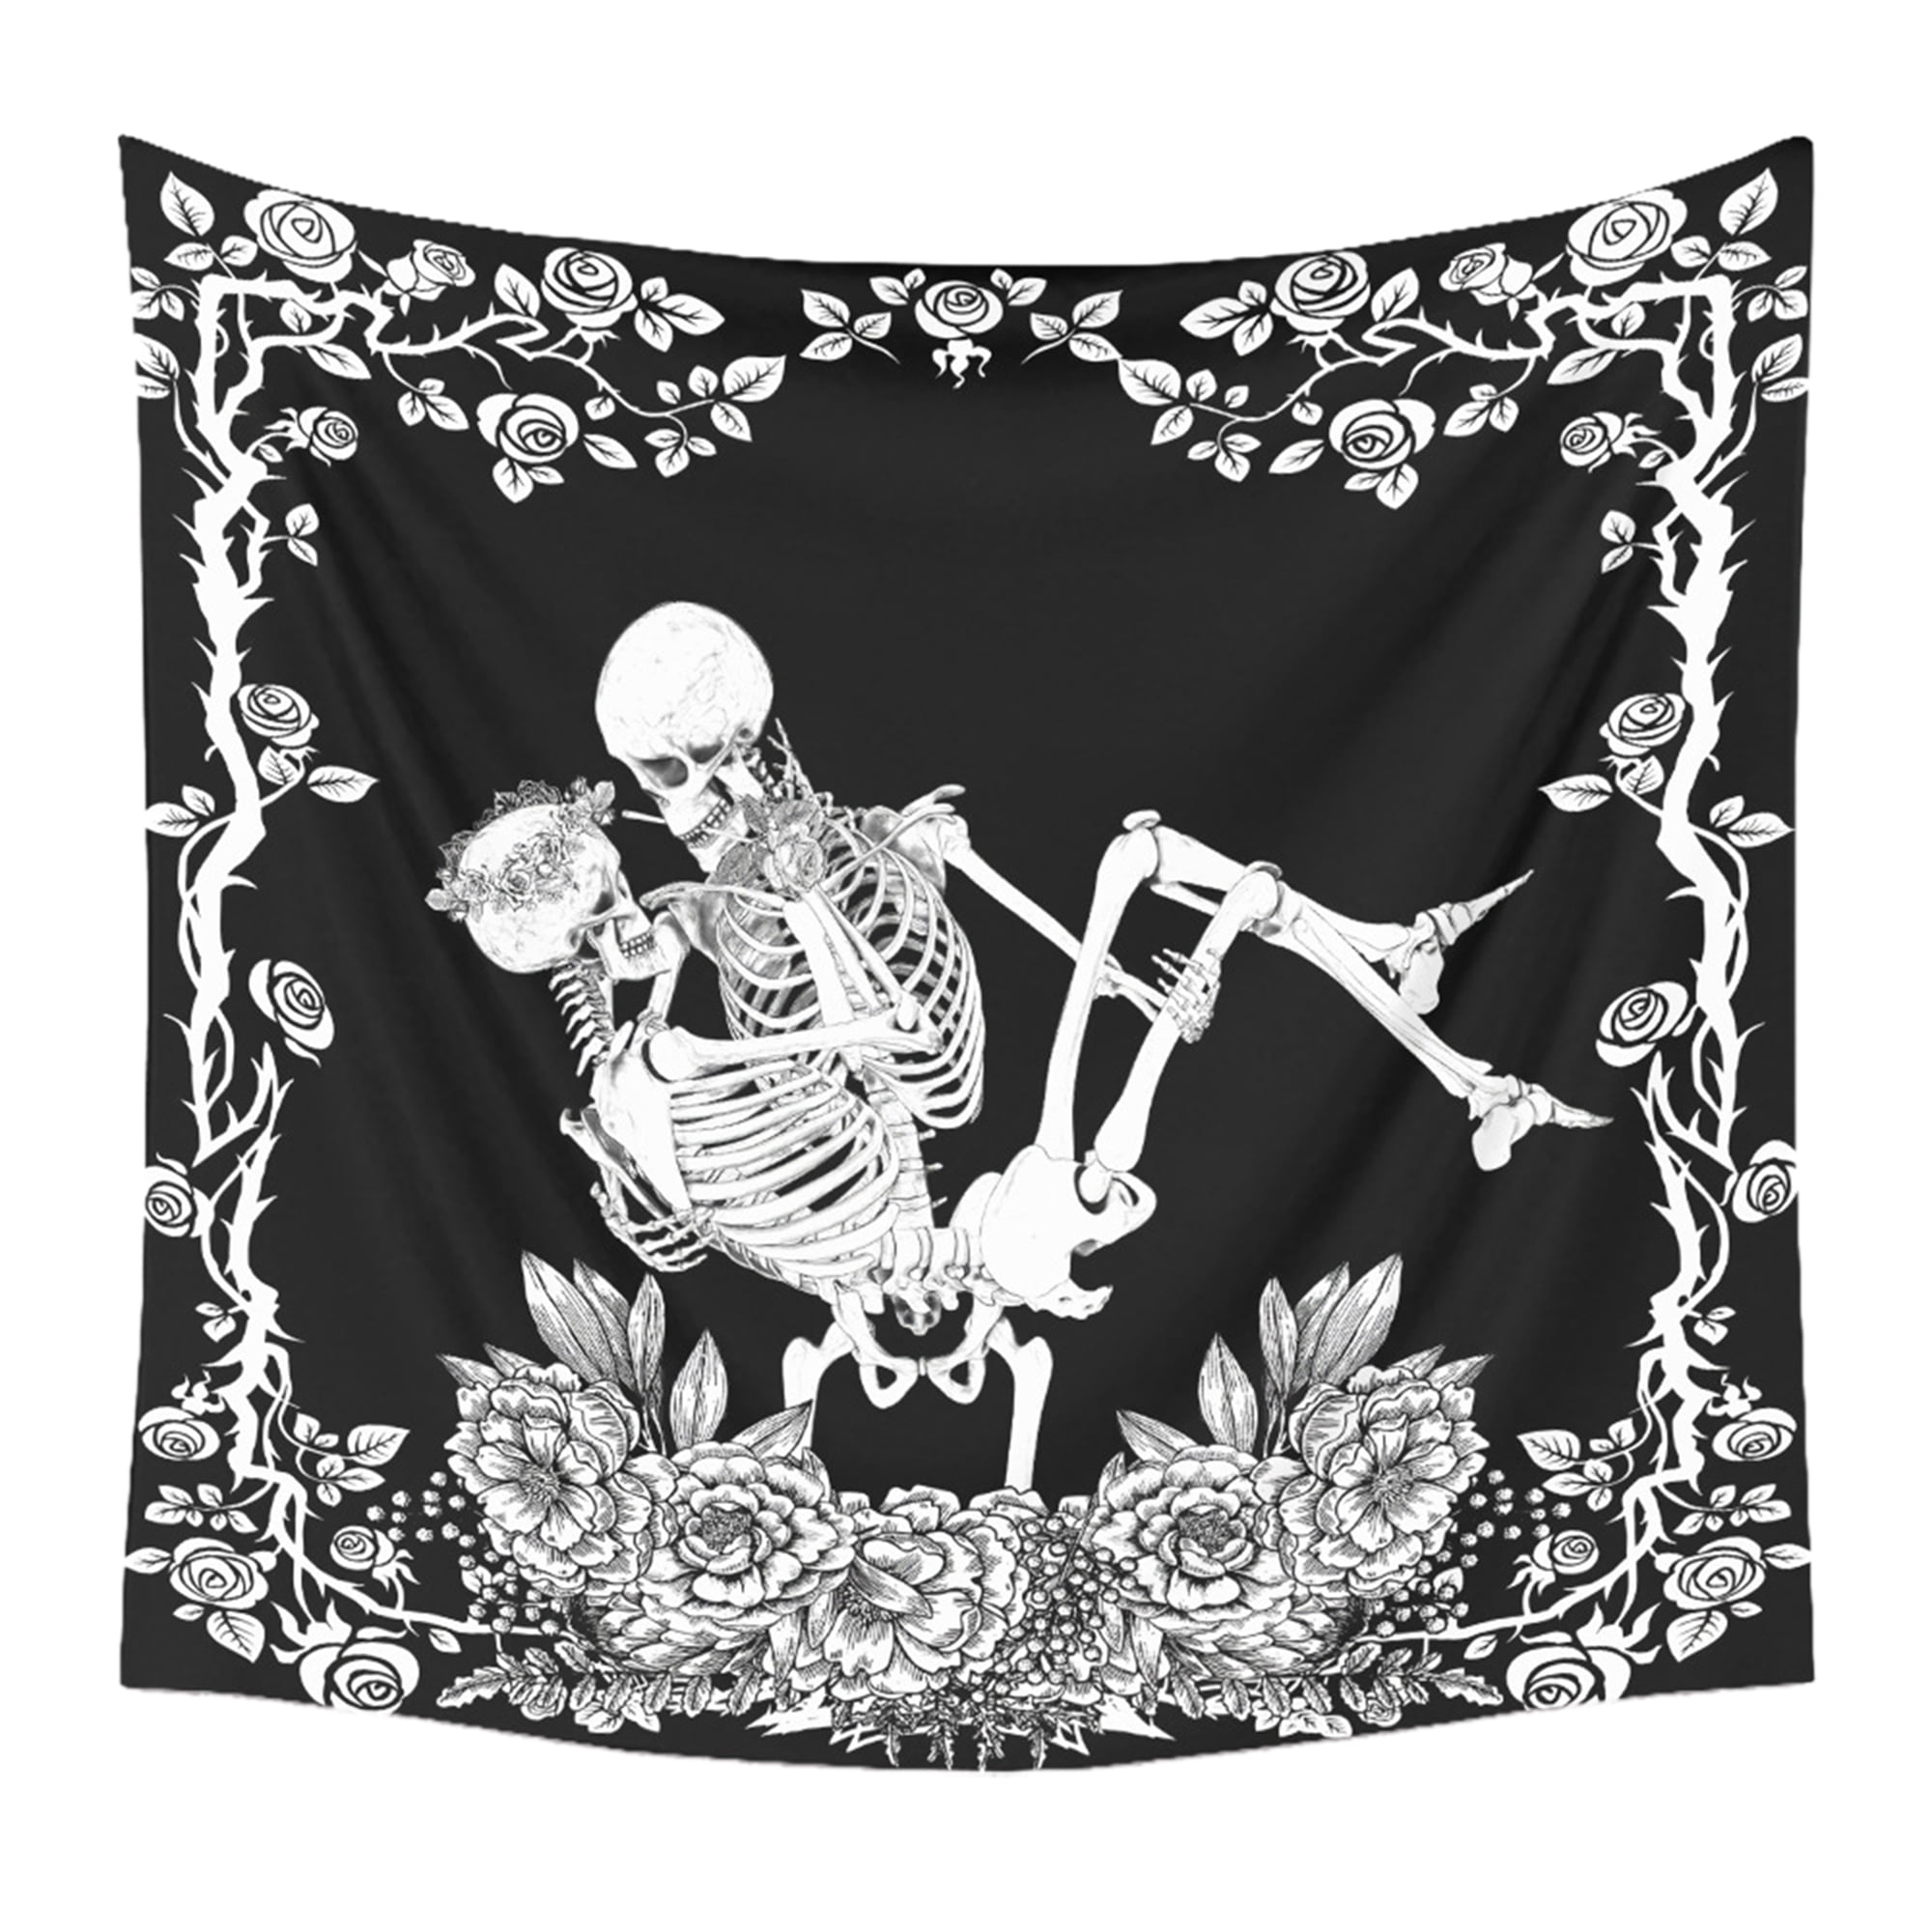 Skull Tapestry Kissing Lover Wall Hanging Tarot Tablecloth Skeleton Art Tapestry 